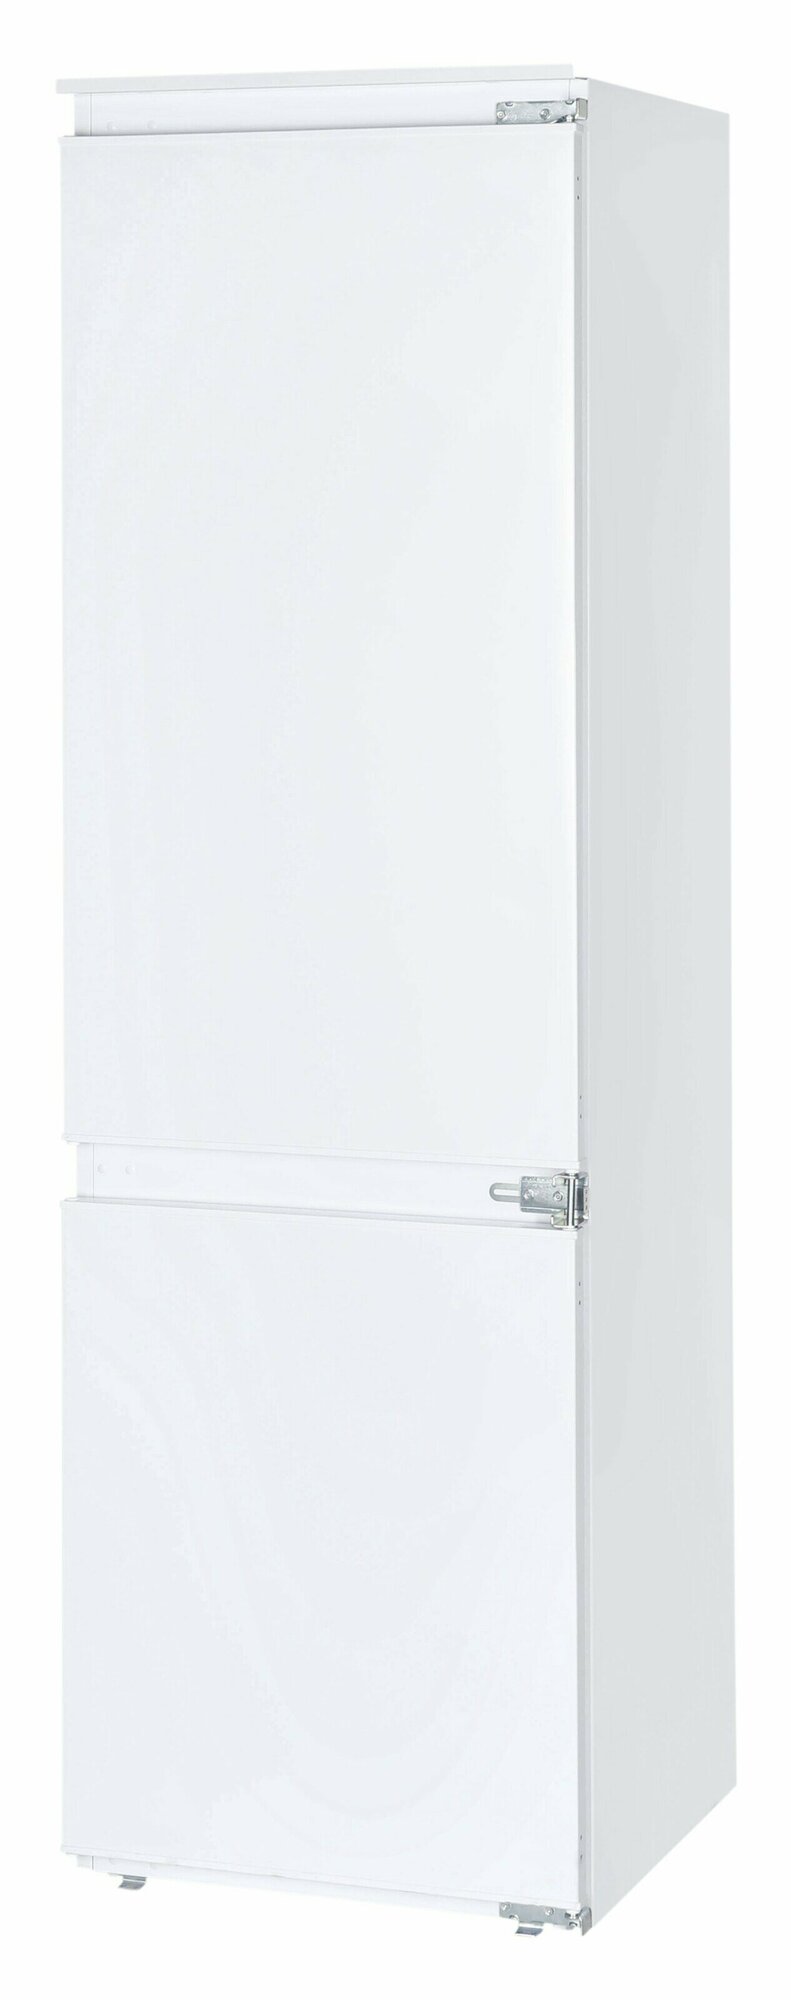 Встраиваемый холодильник NordFROST NRCB 330 NFW